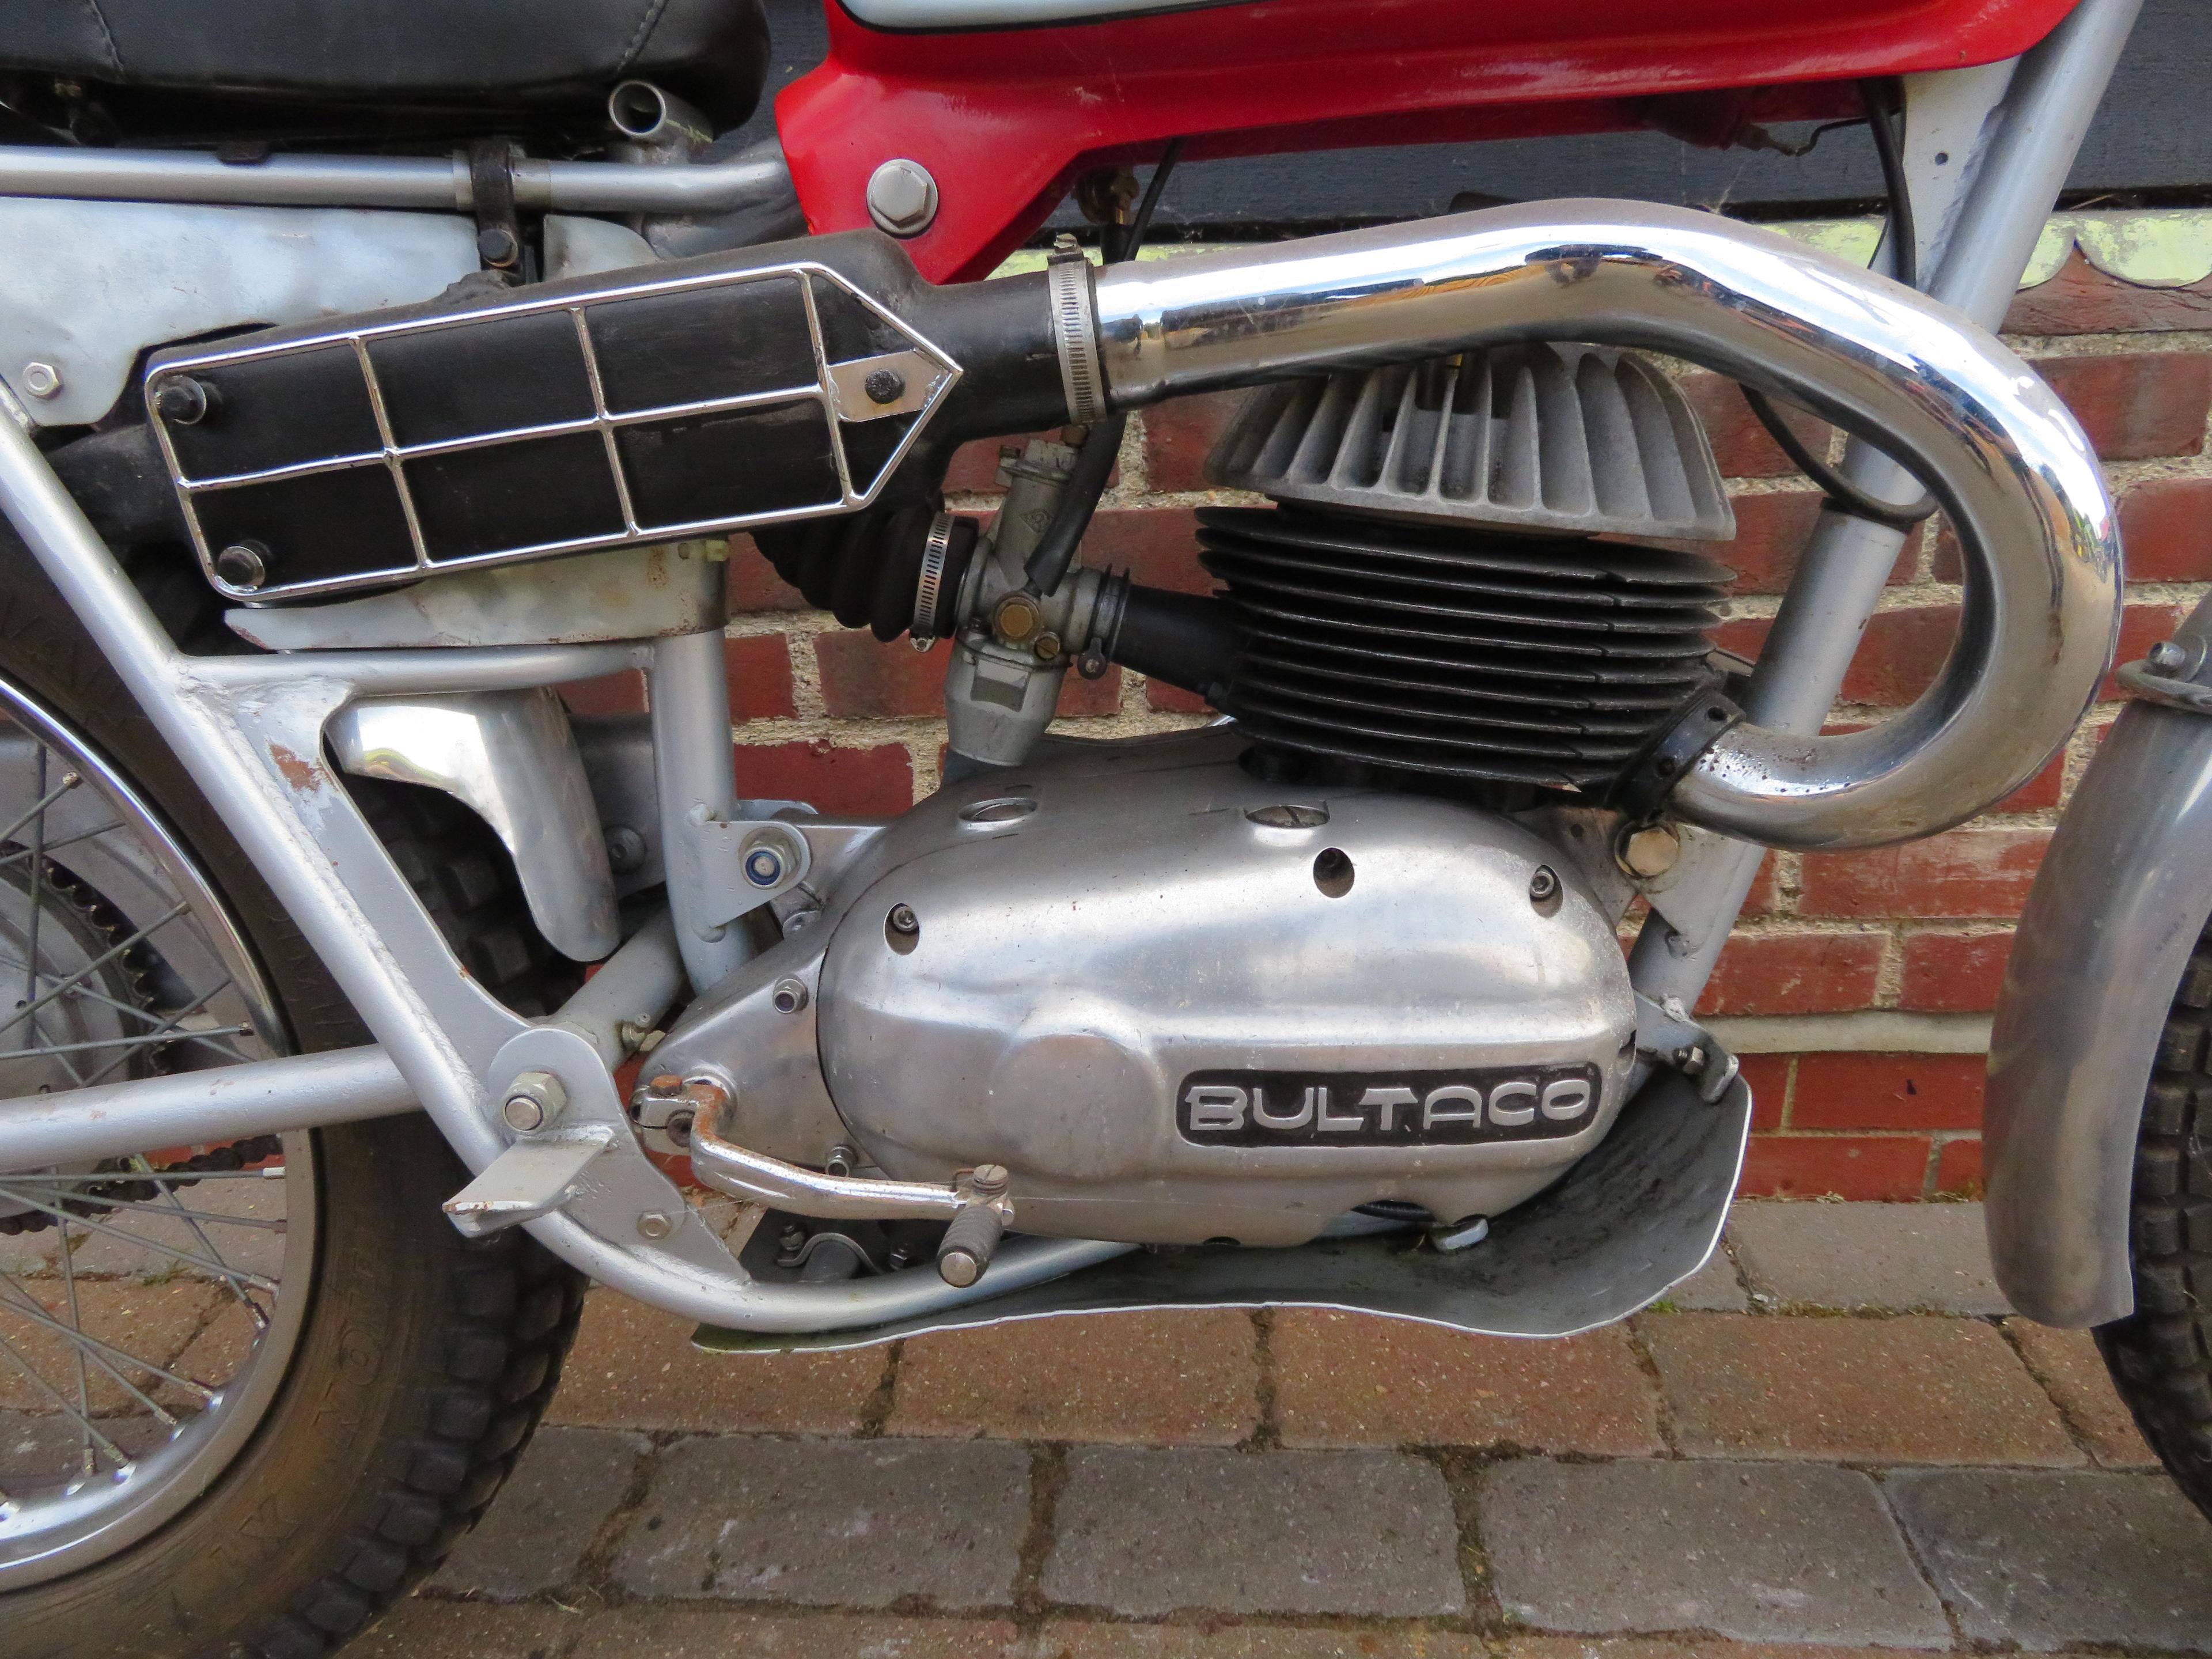 bultaco serial numbers